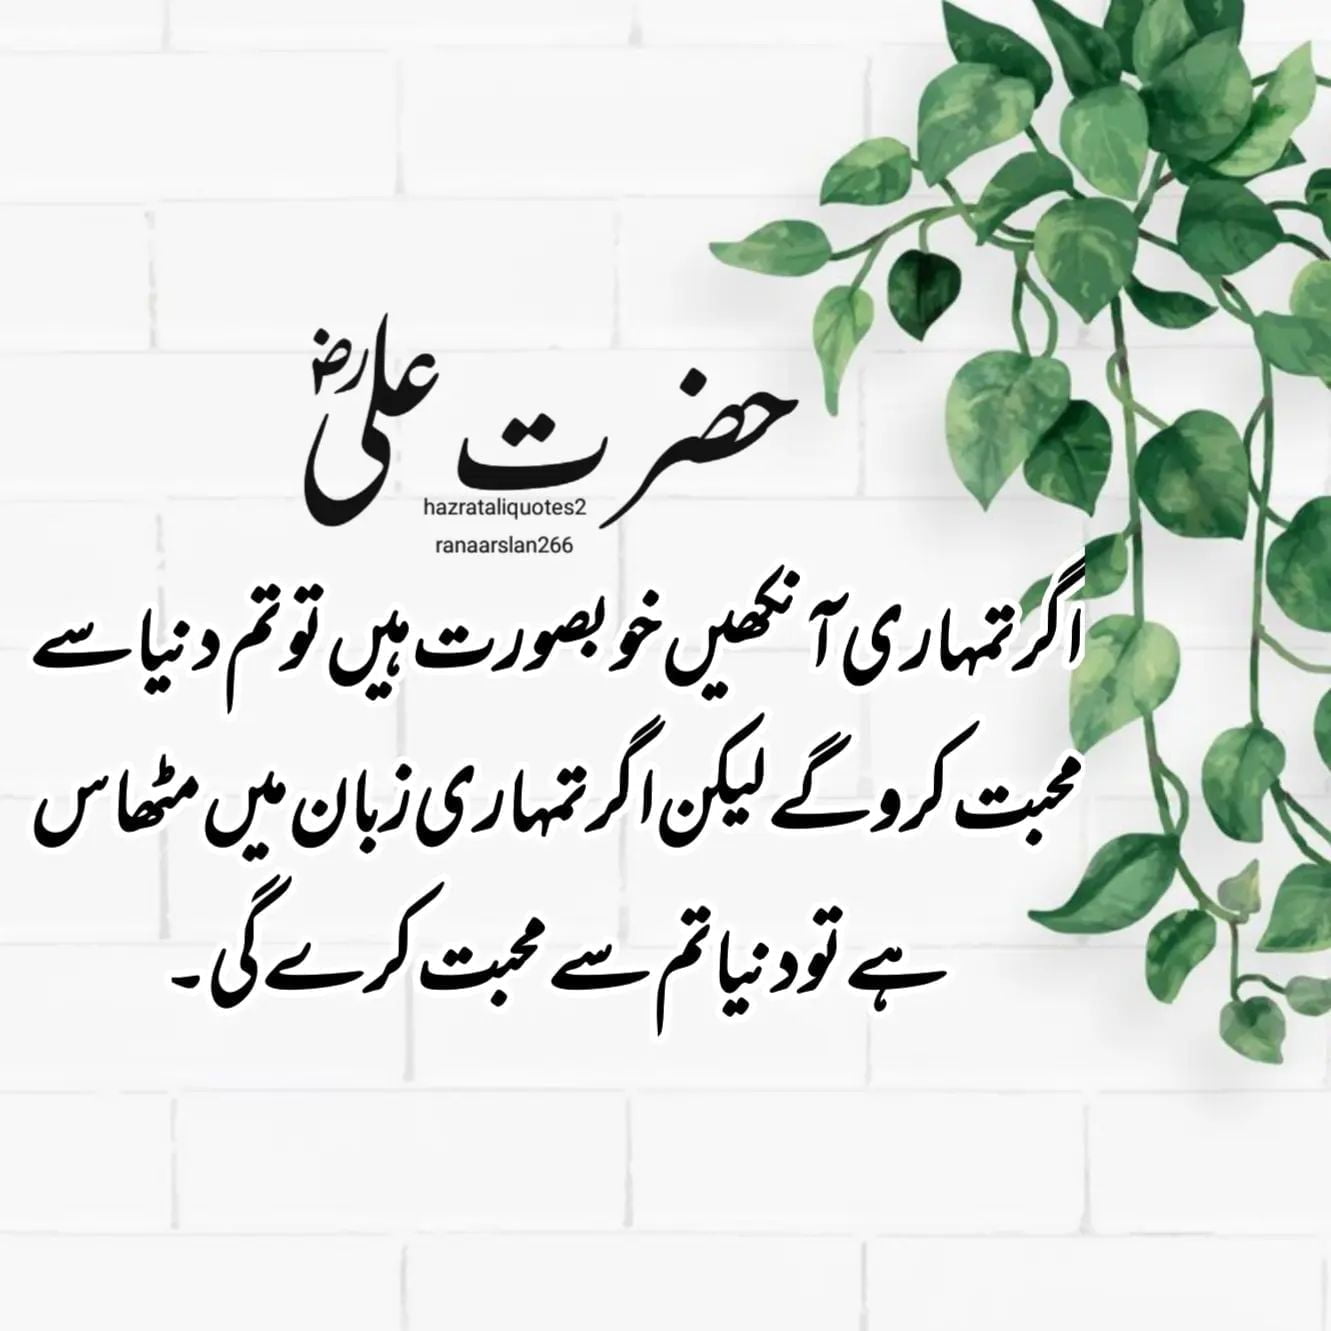 100 Best Hazrat Ali Quotes in Urdu With Images